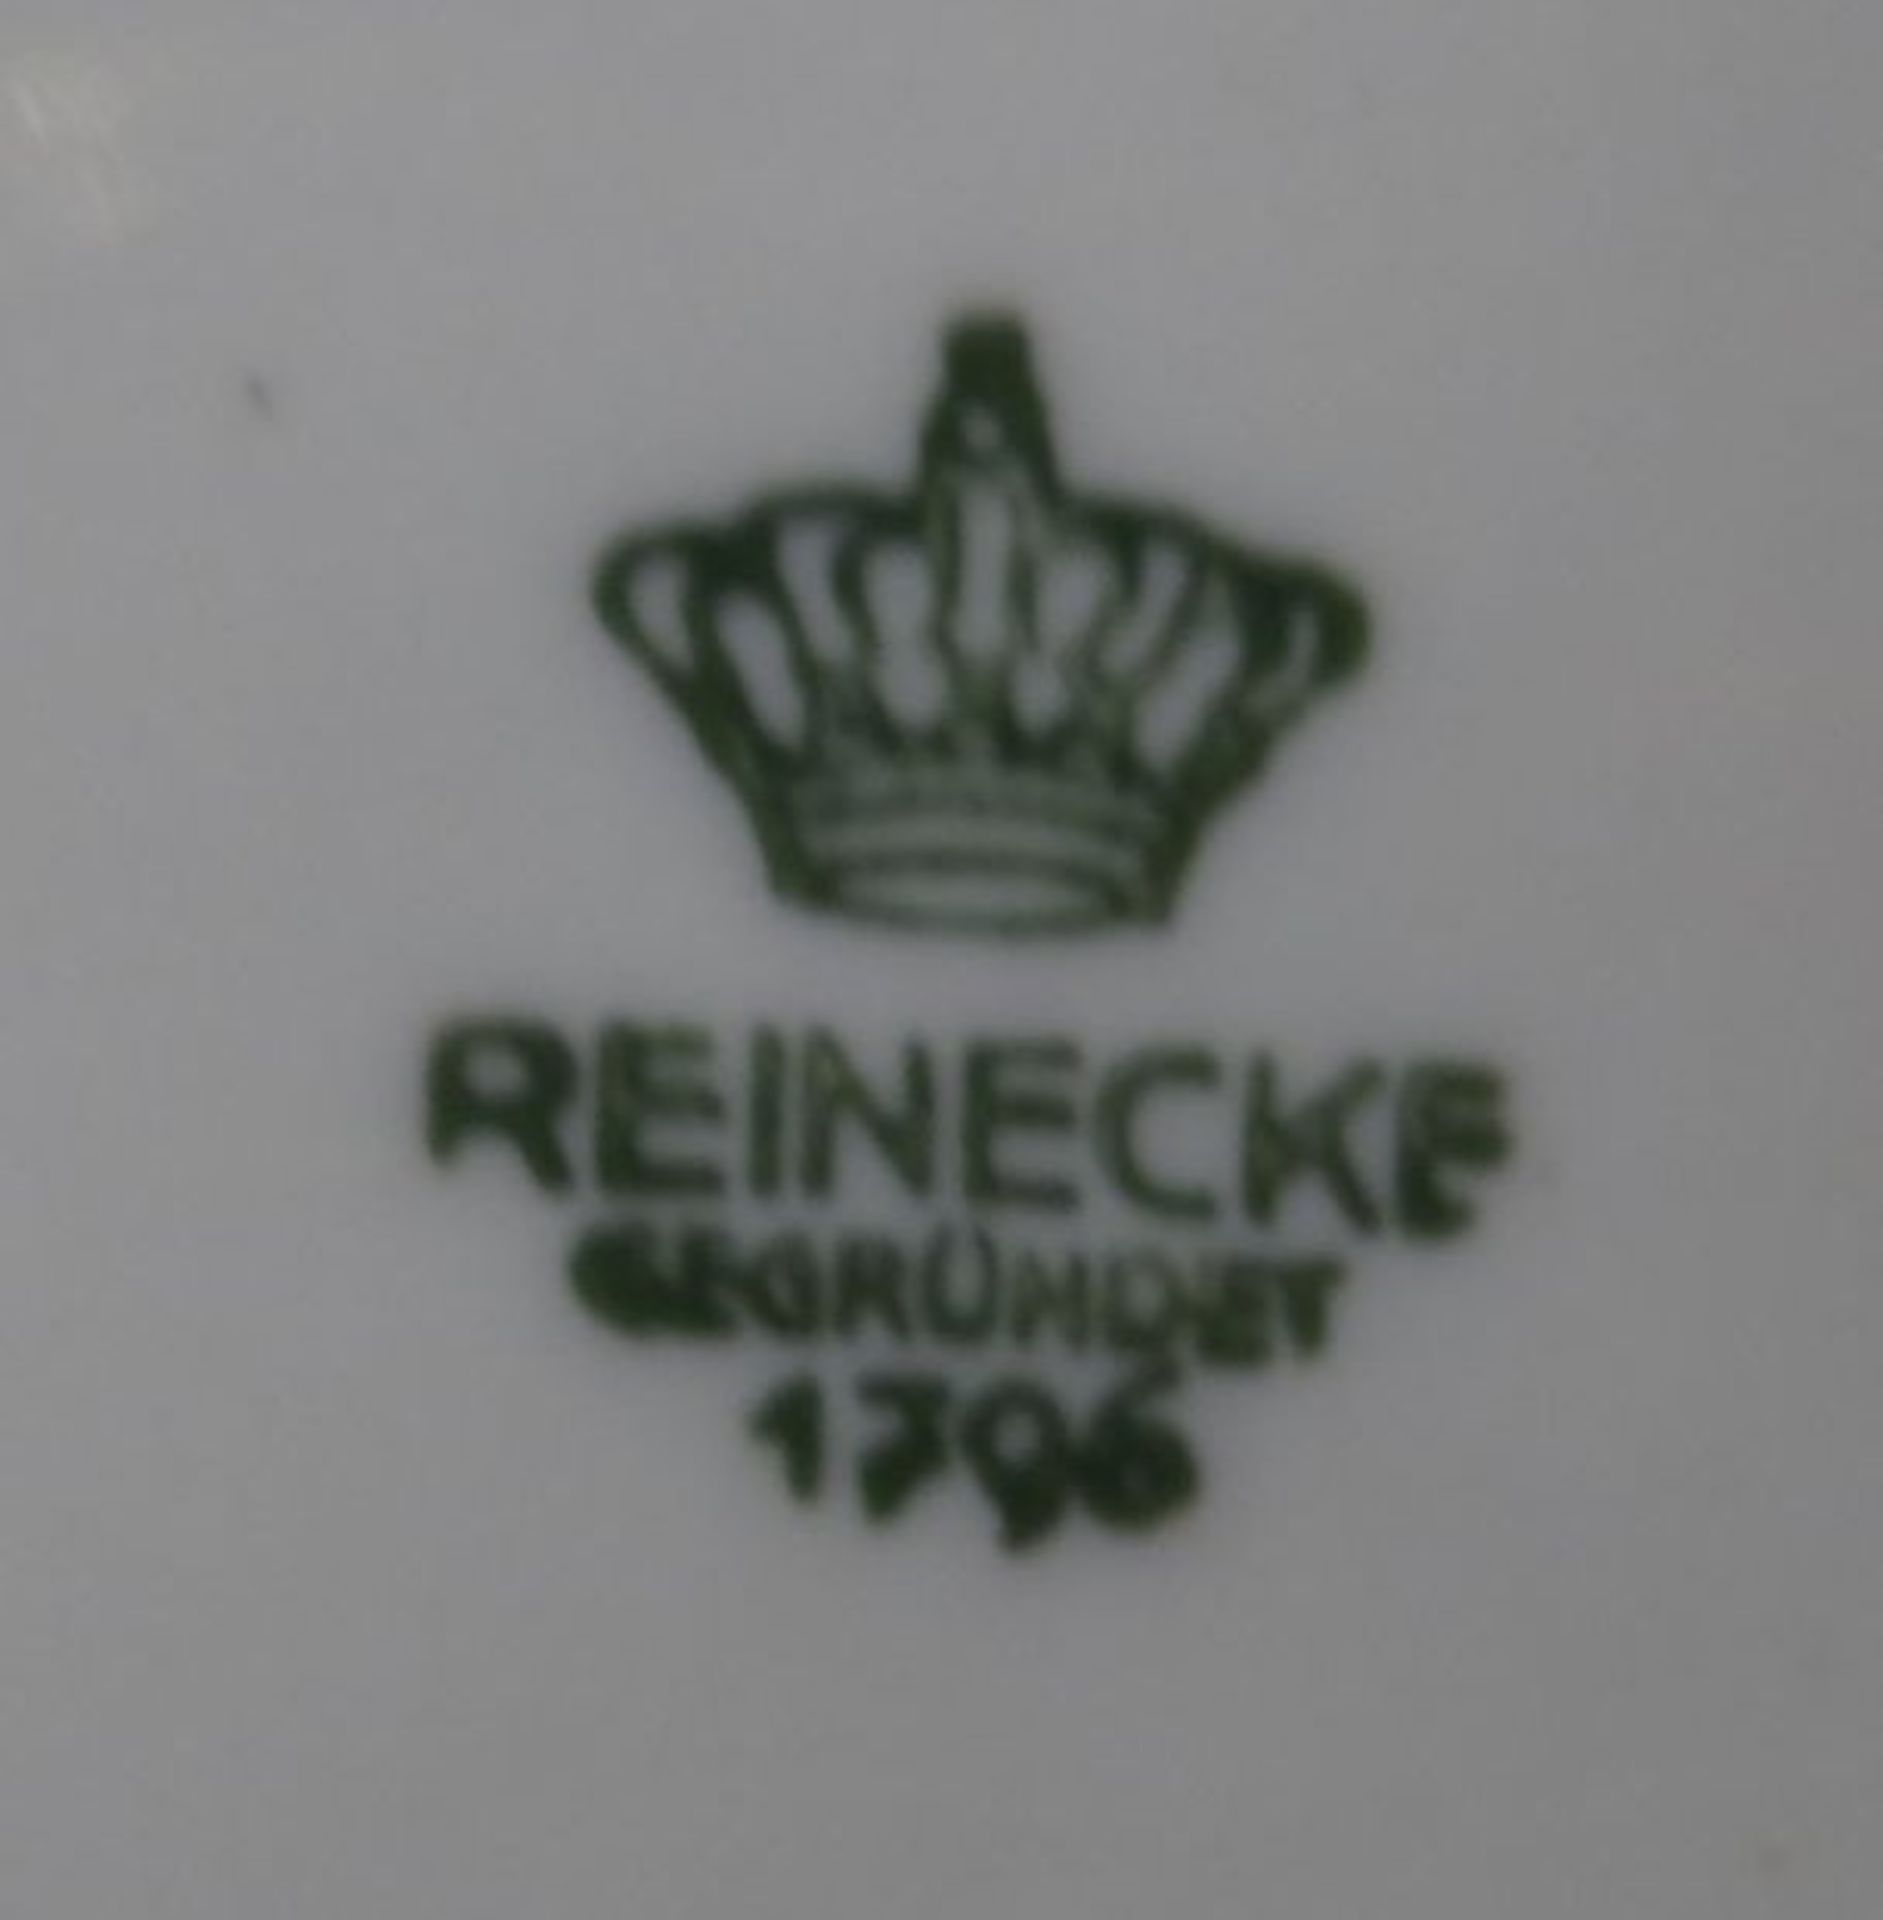 grosse Bauernkanne, Strohblume "Reineckke", H-25 cm - Bild 4 aus 4